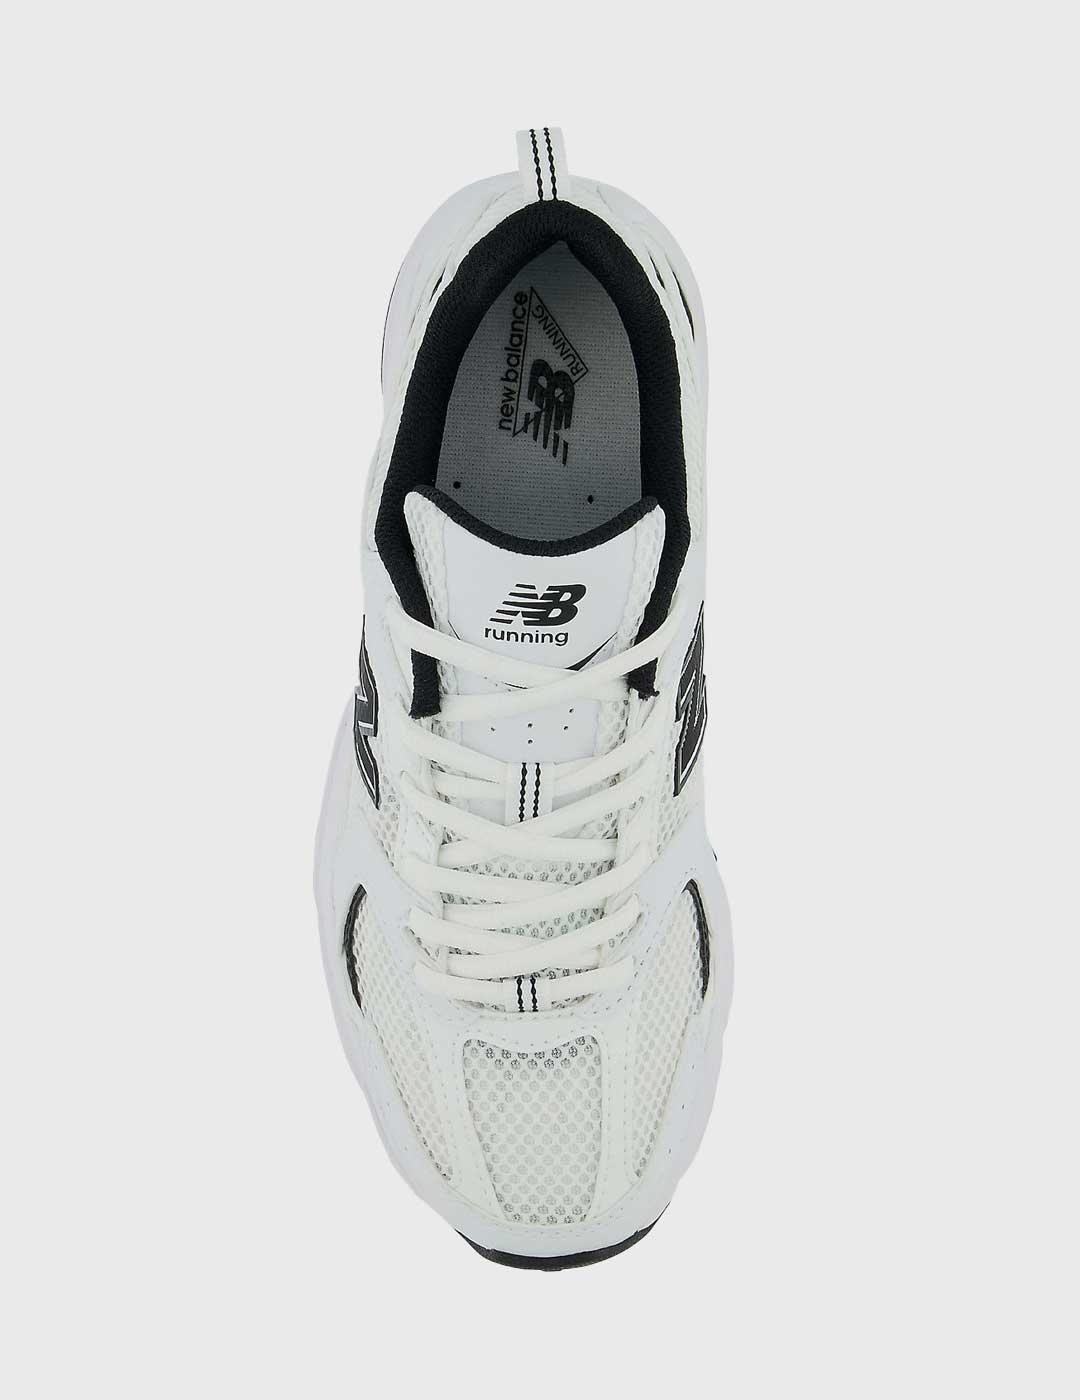 Zapatillas New Balance 530 blancas y negras unisex